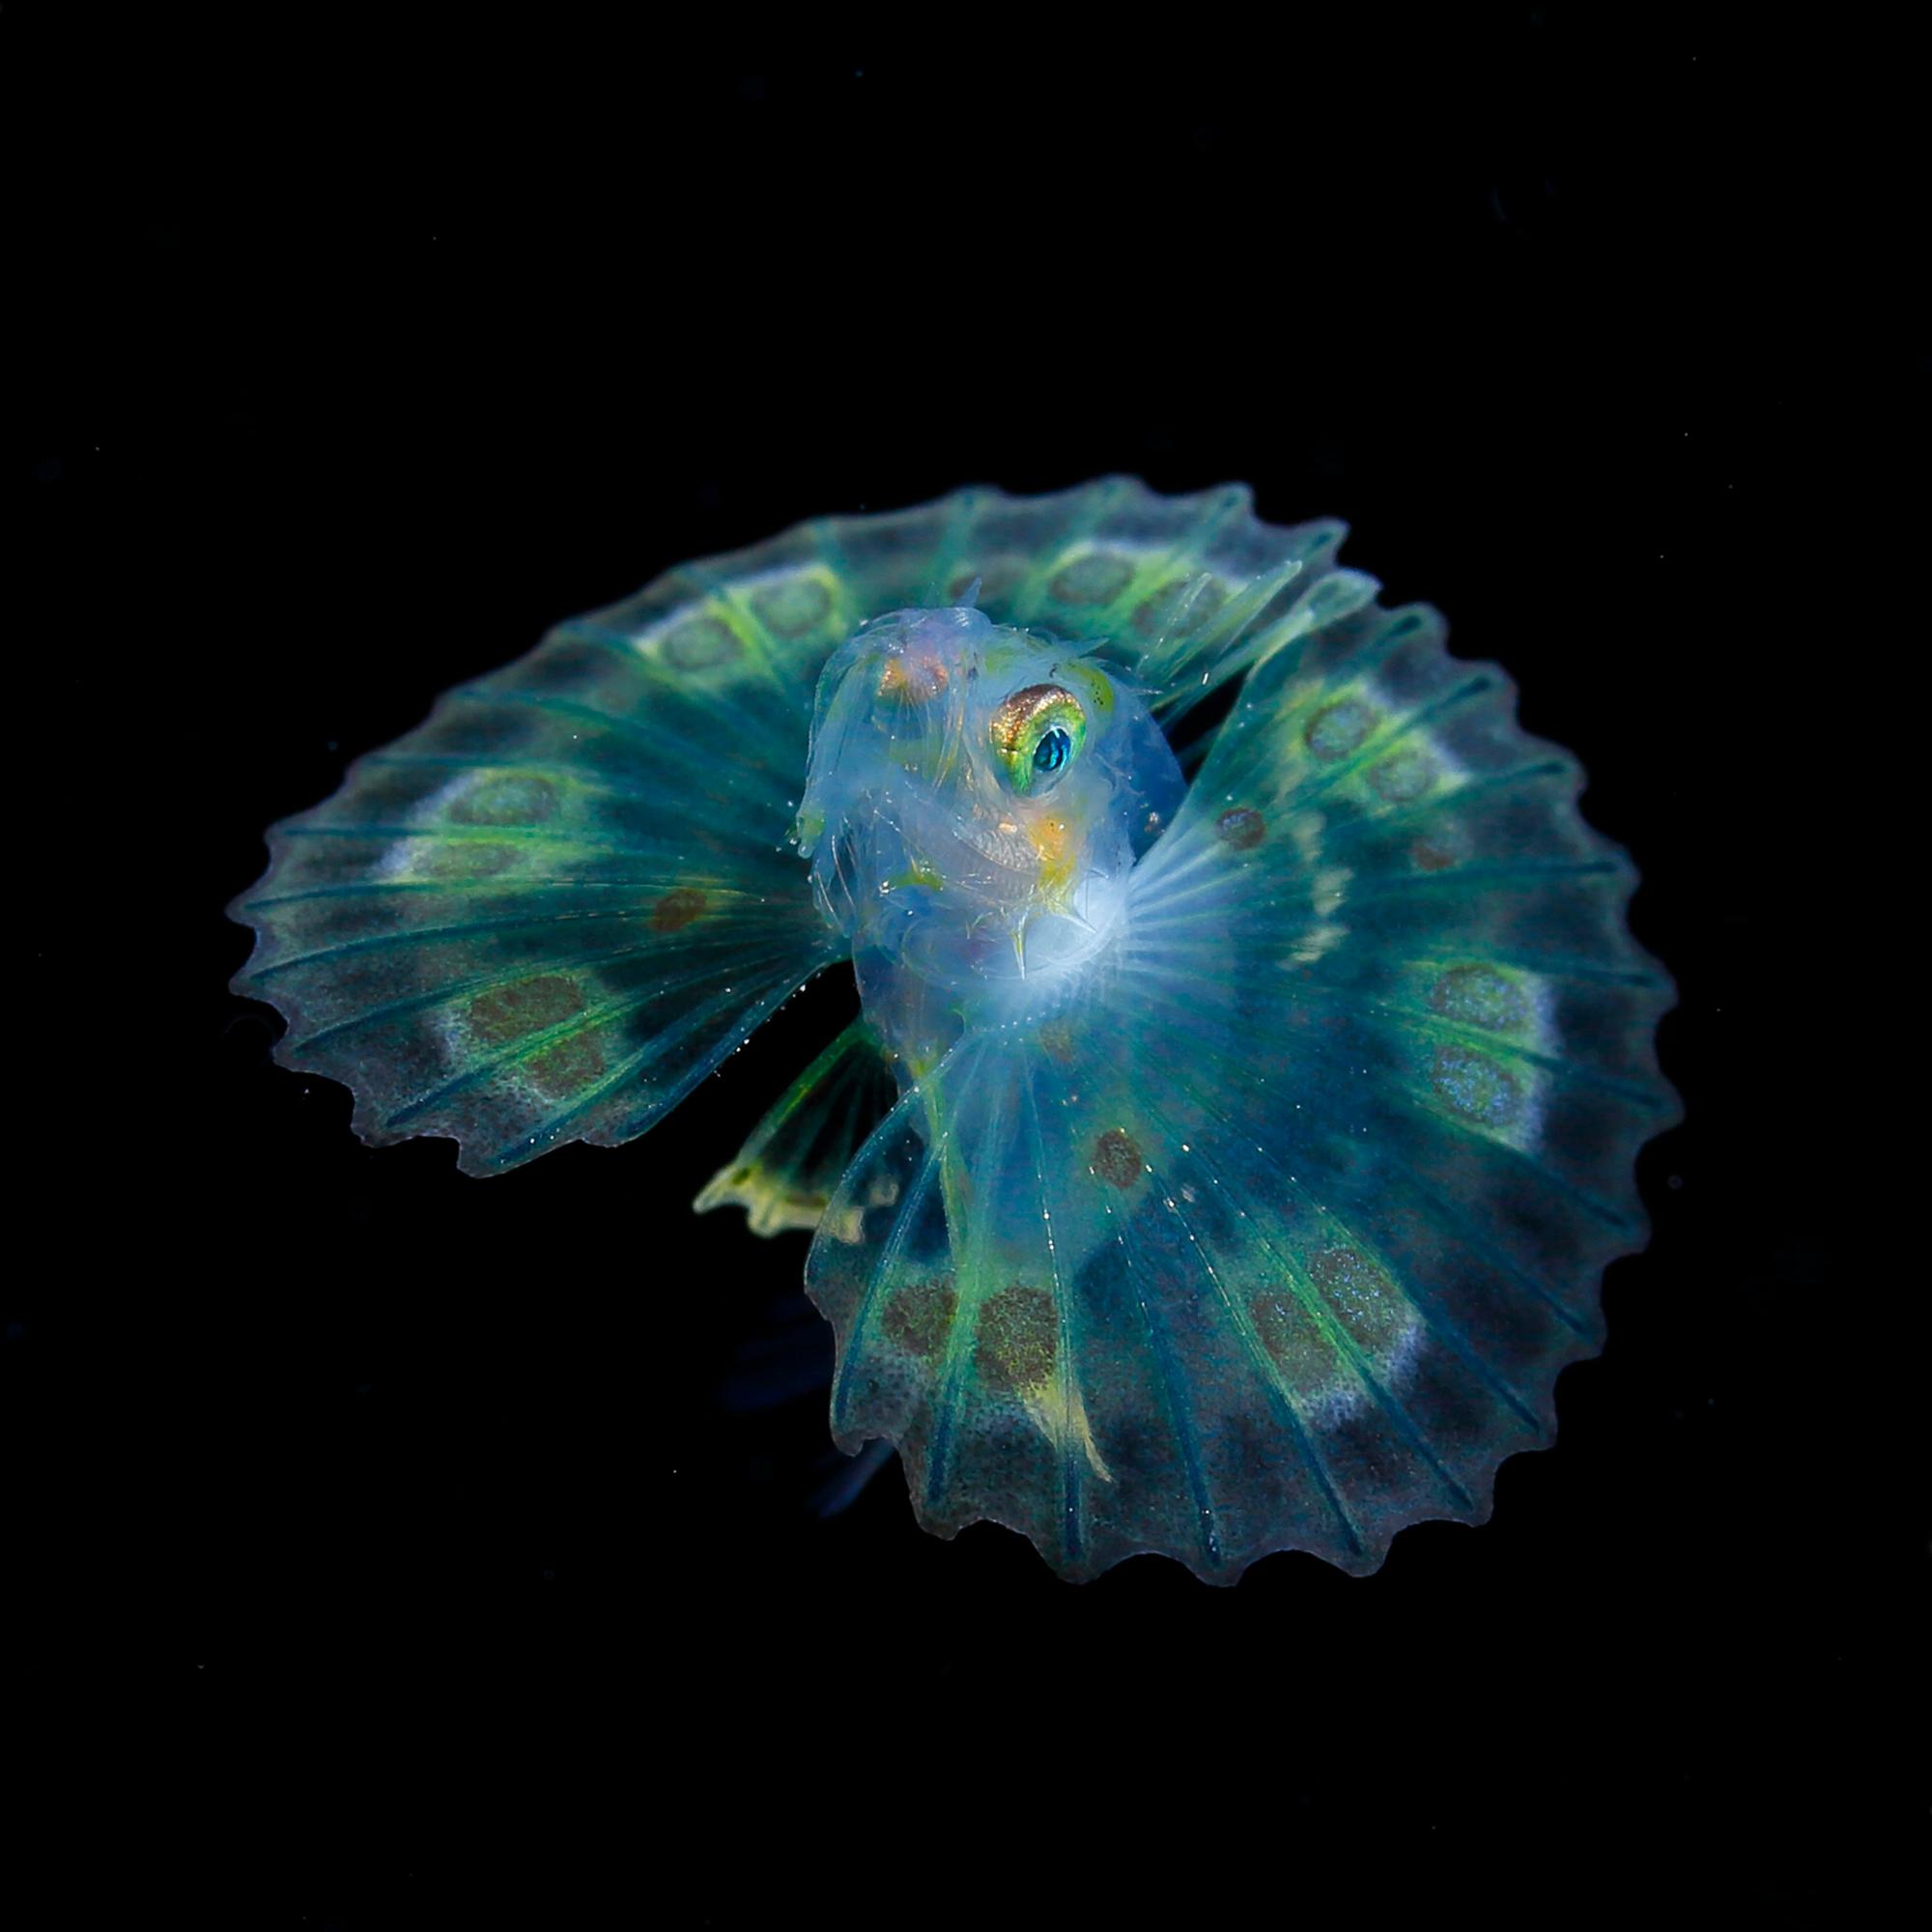 Joyas en el mar nocturno: plancton luminoso capturado en las aguas oscuras de la costa sur de Japón